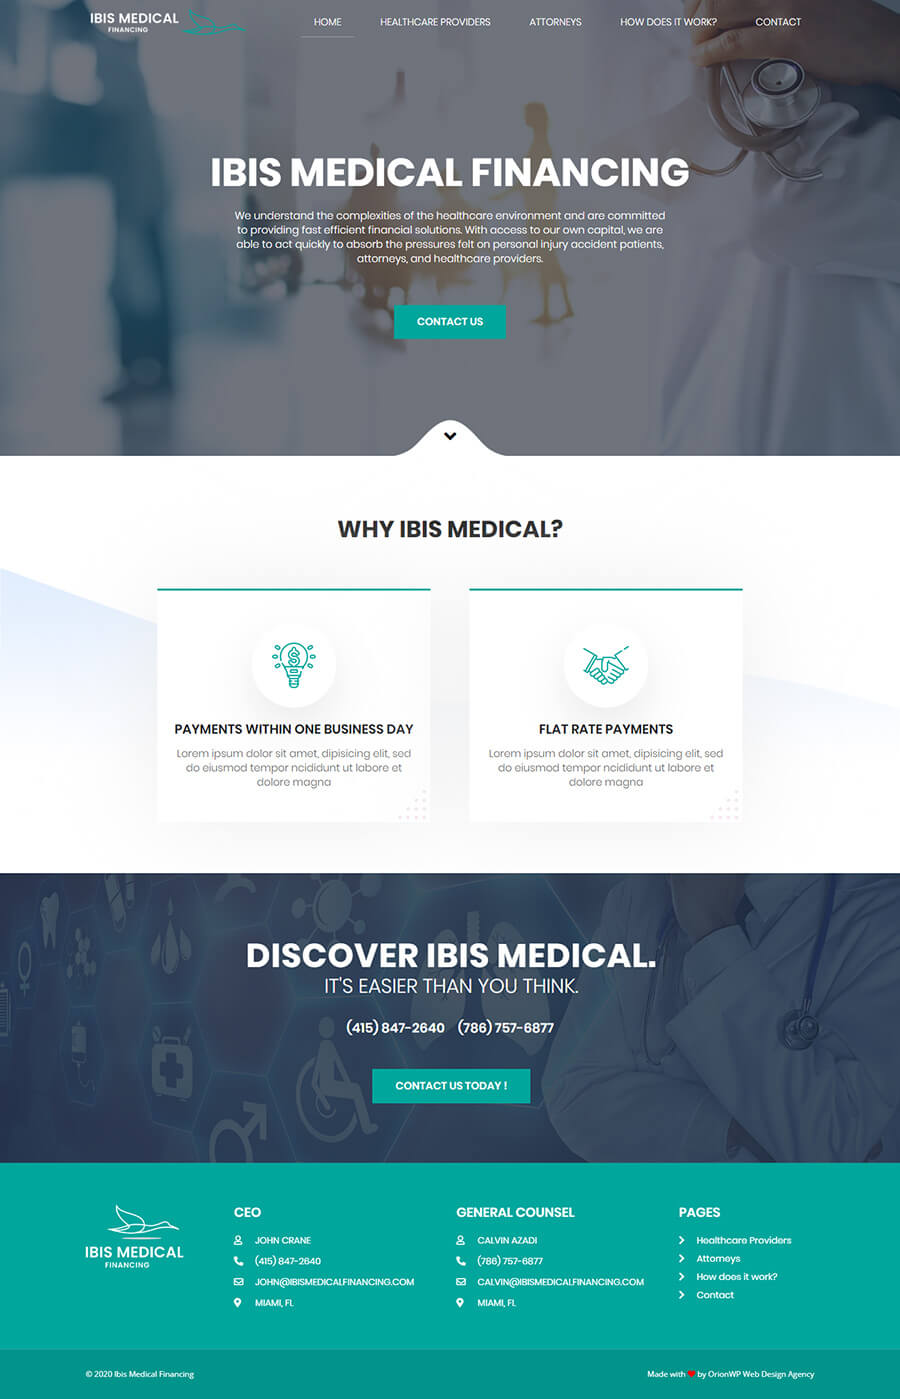 ibis_medical_financing_full